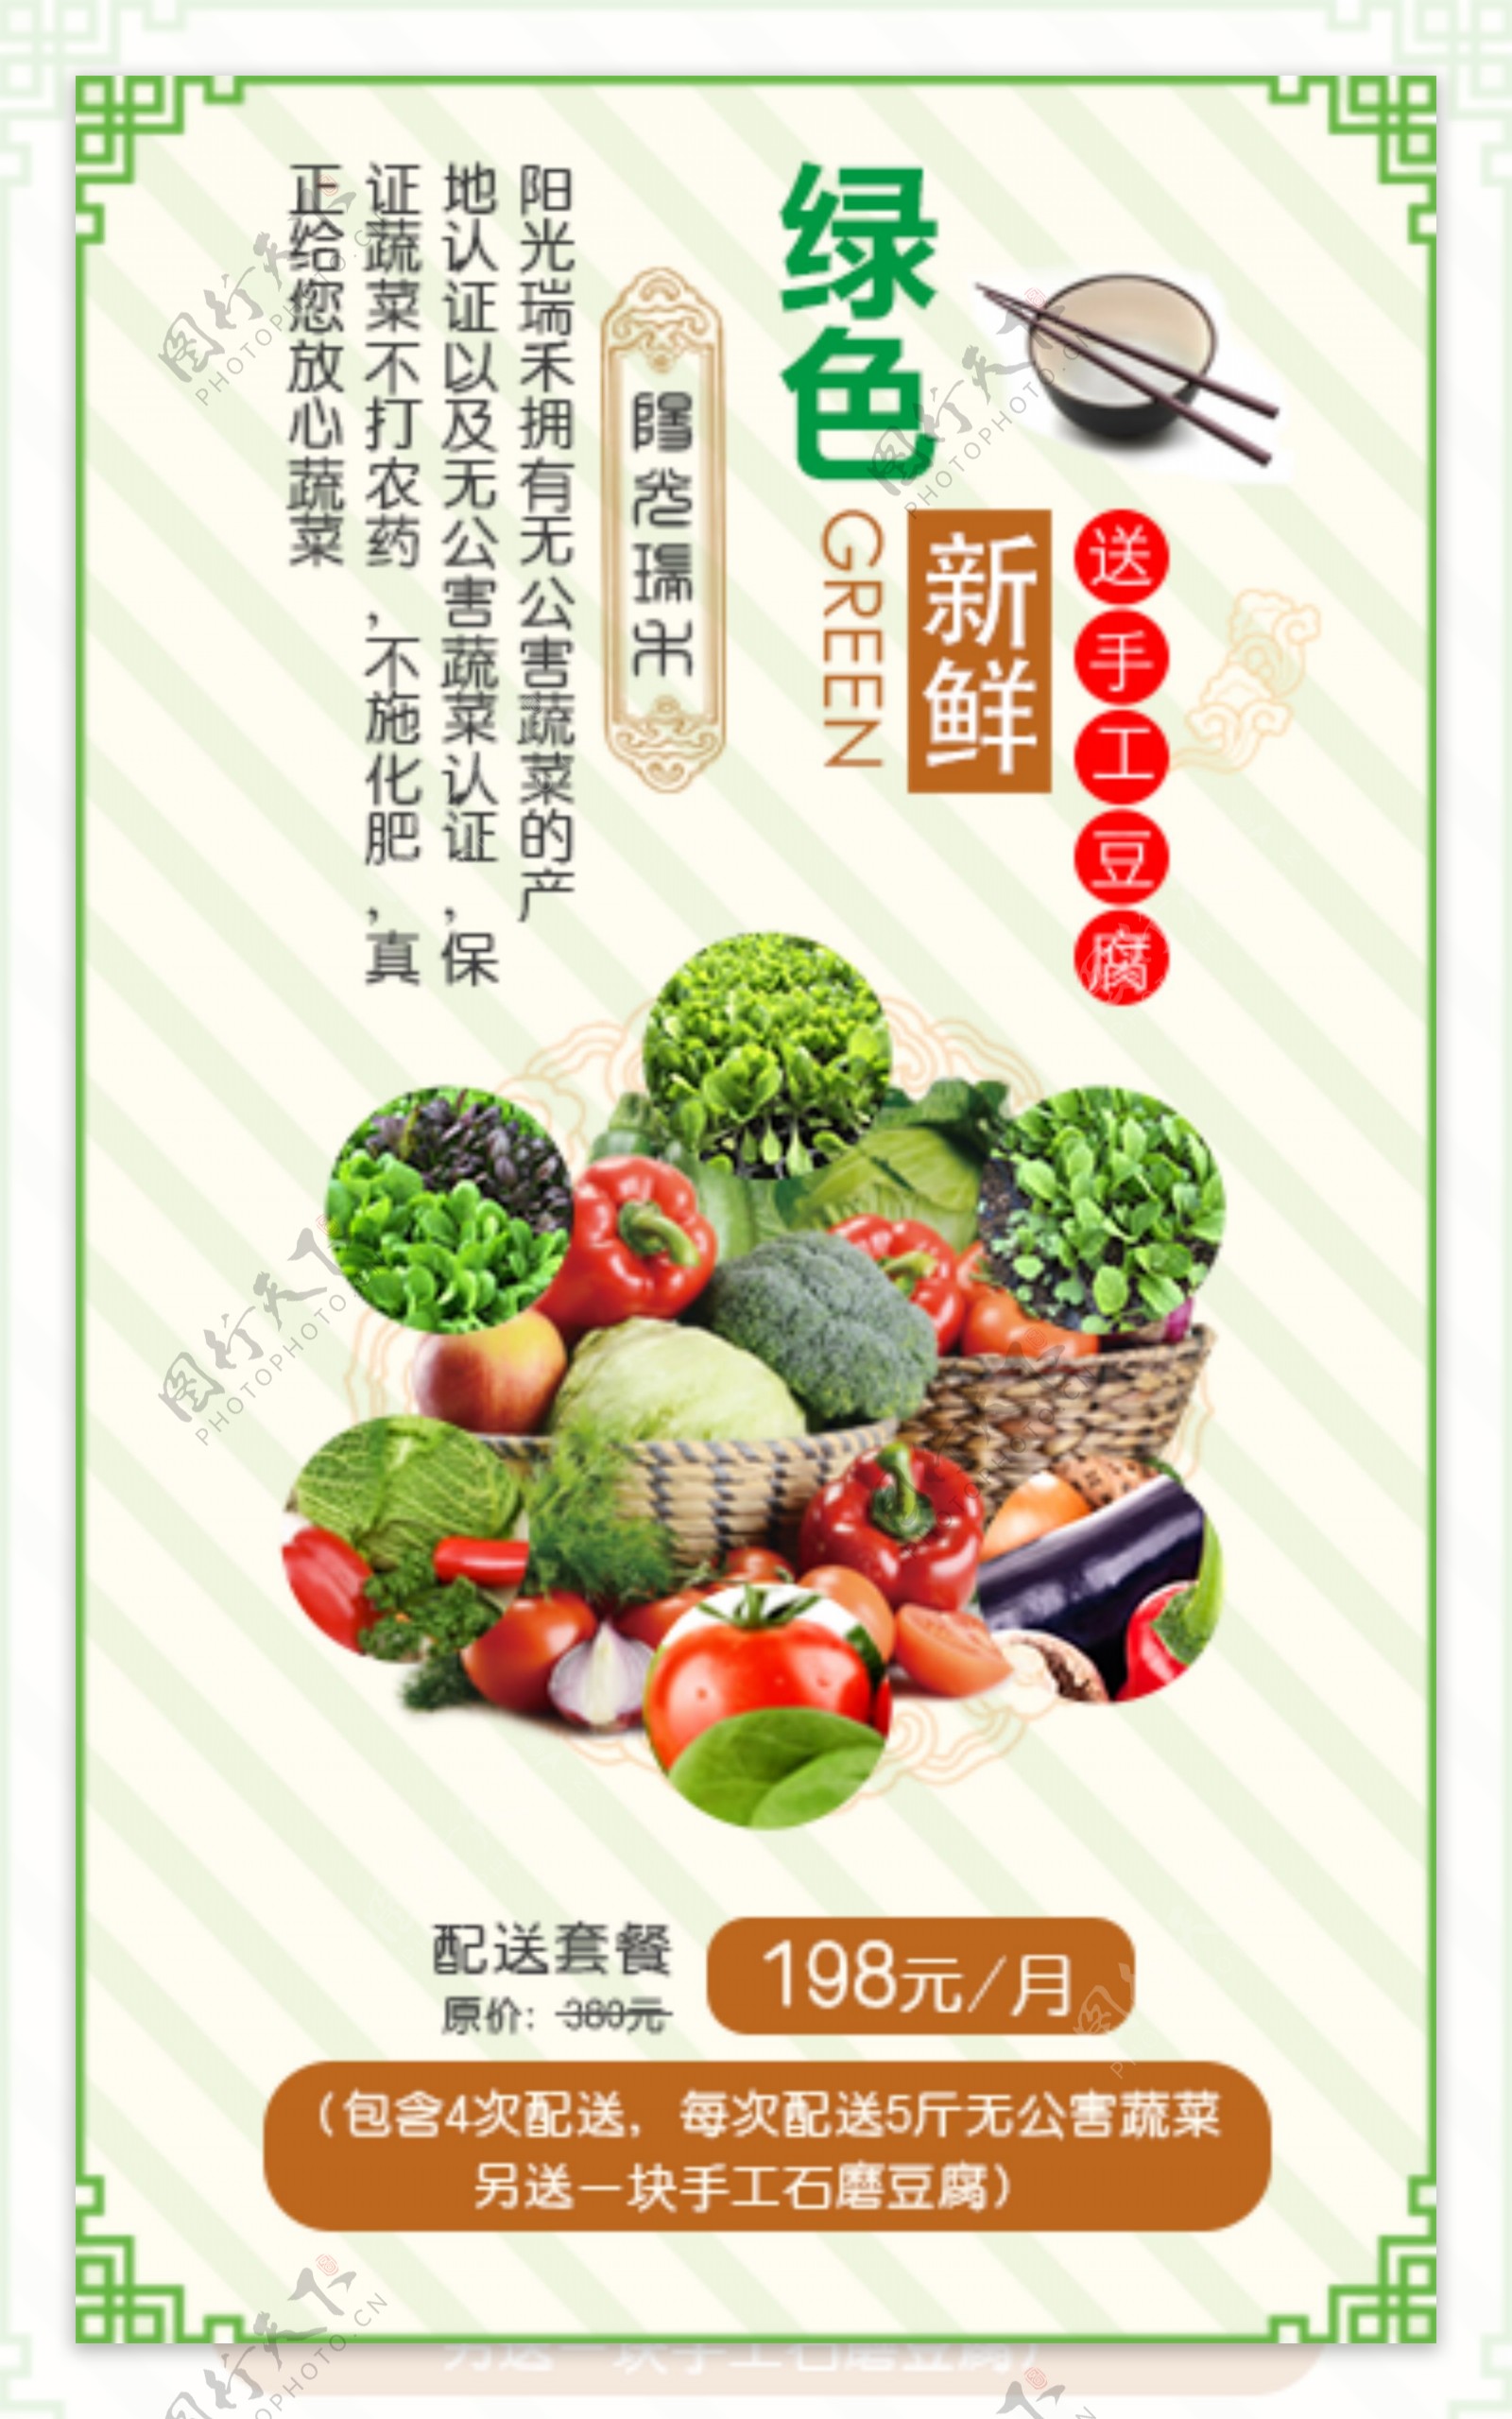 微信蔬菜水果推广促销创意海报